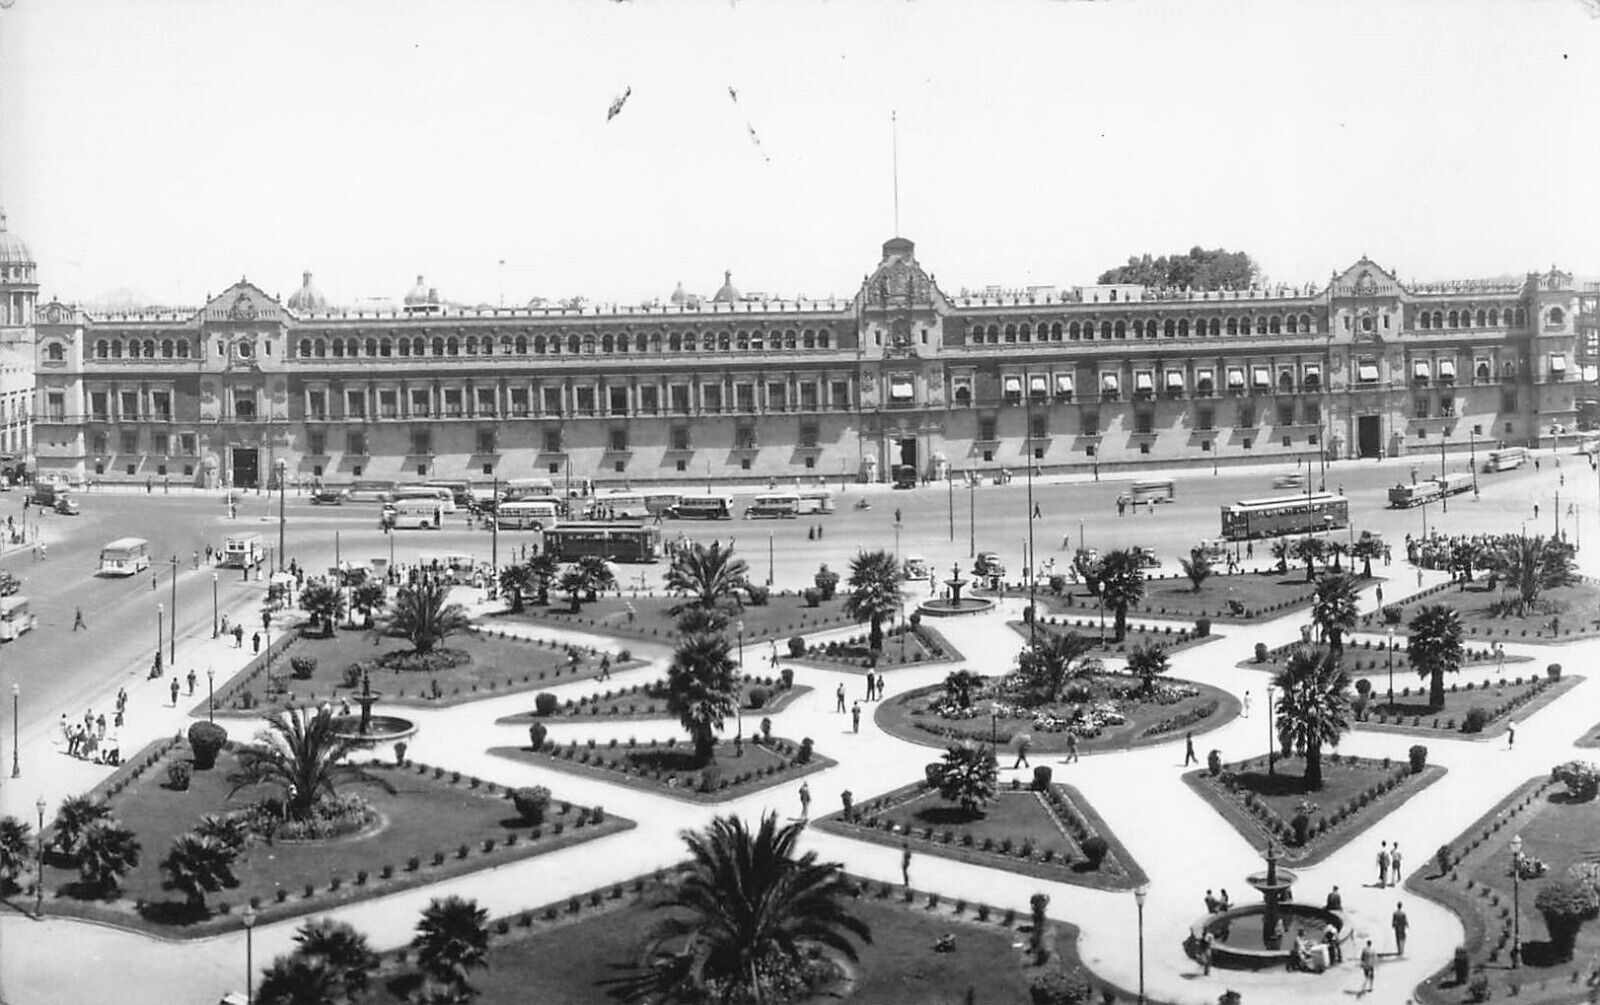 RPPC Zocalo Plaza de la Constitución Mexico City 1940 Palacio Nacional